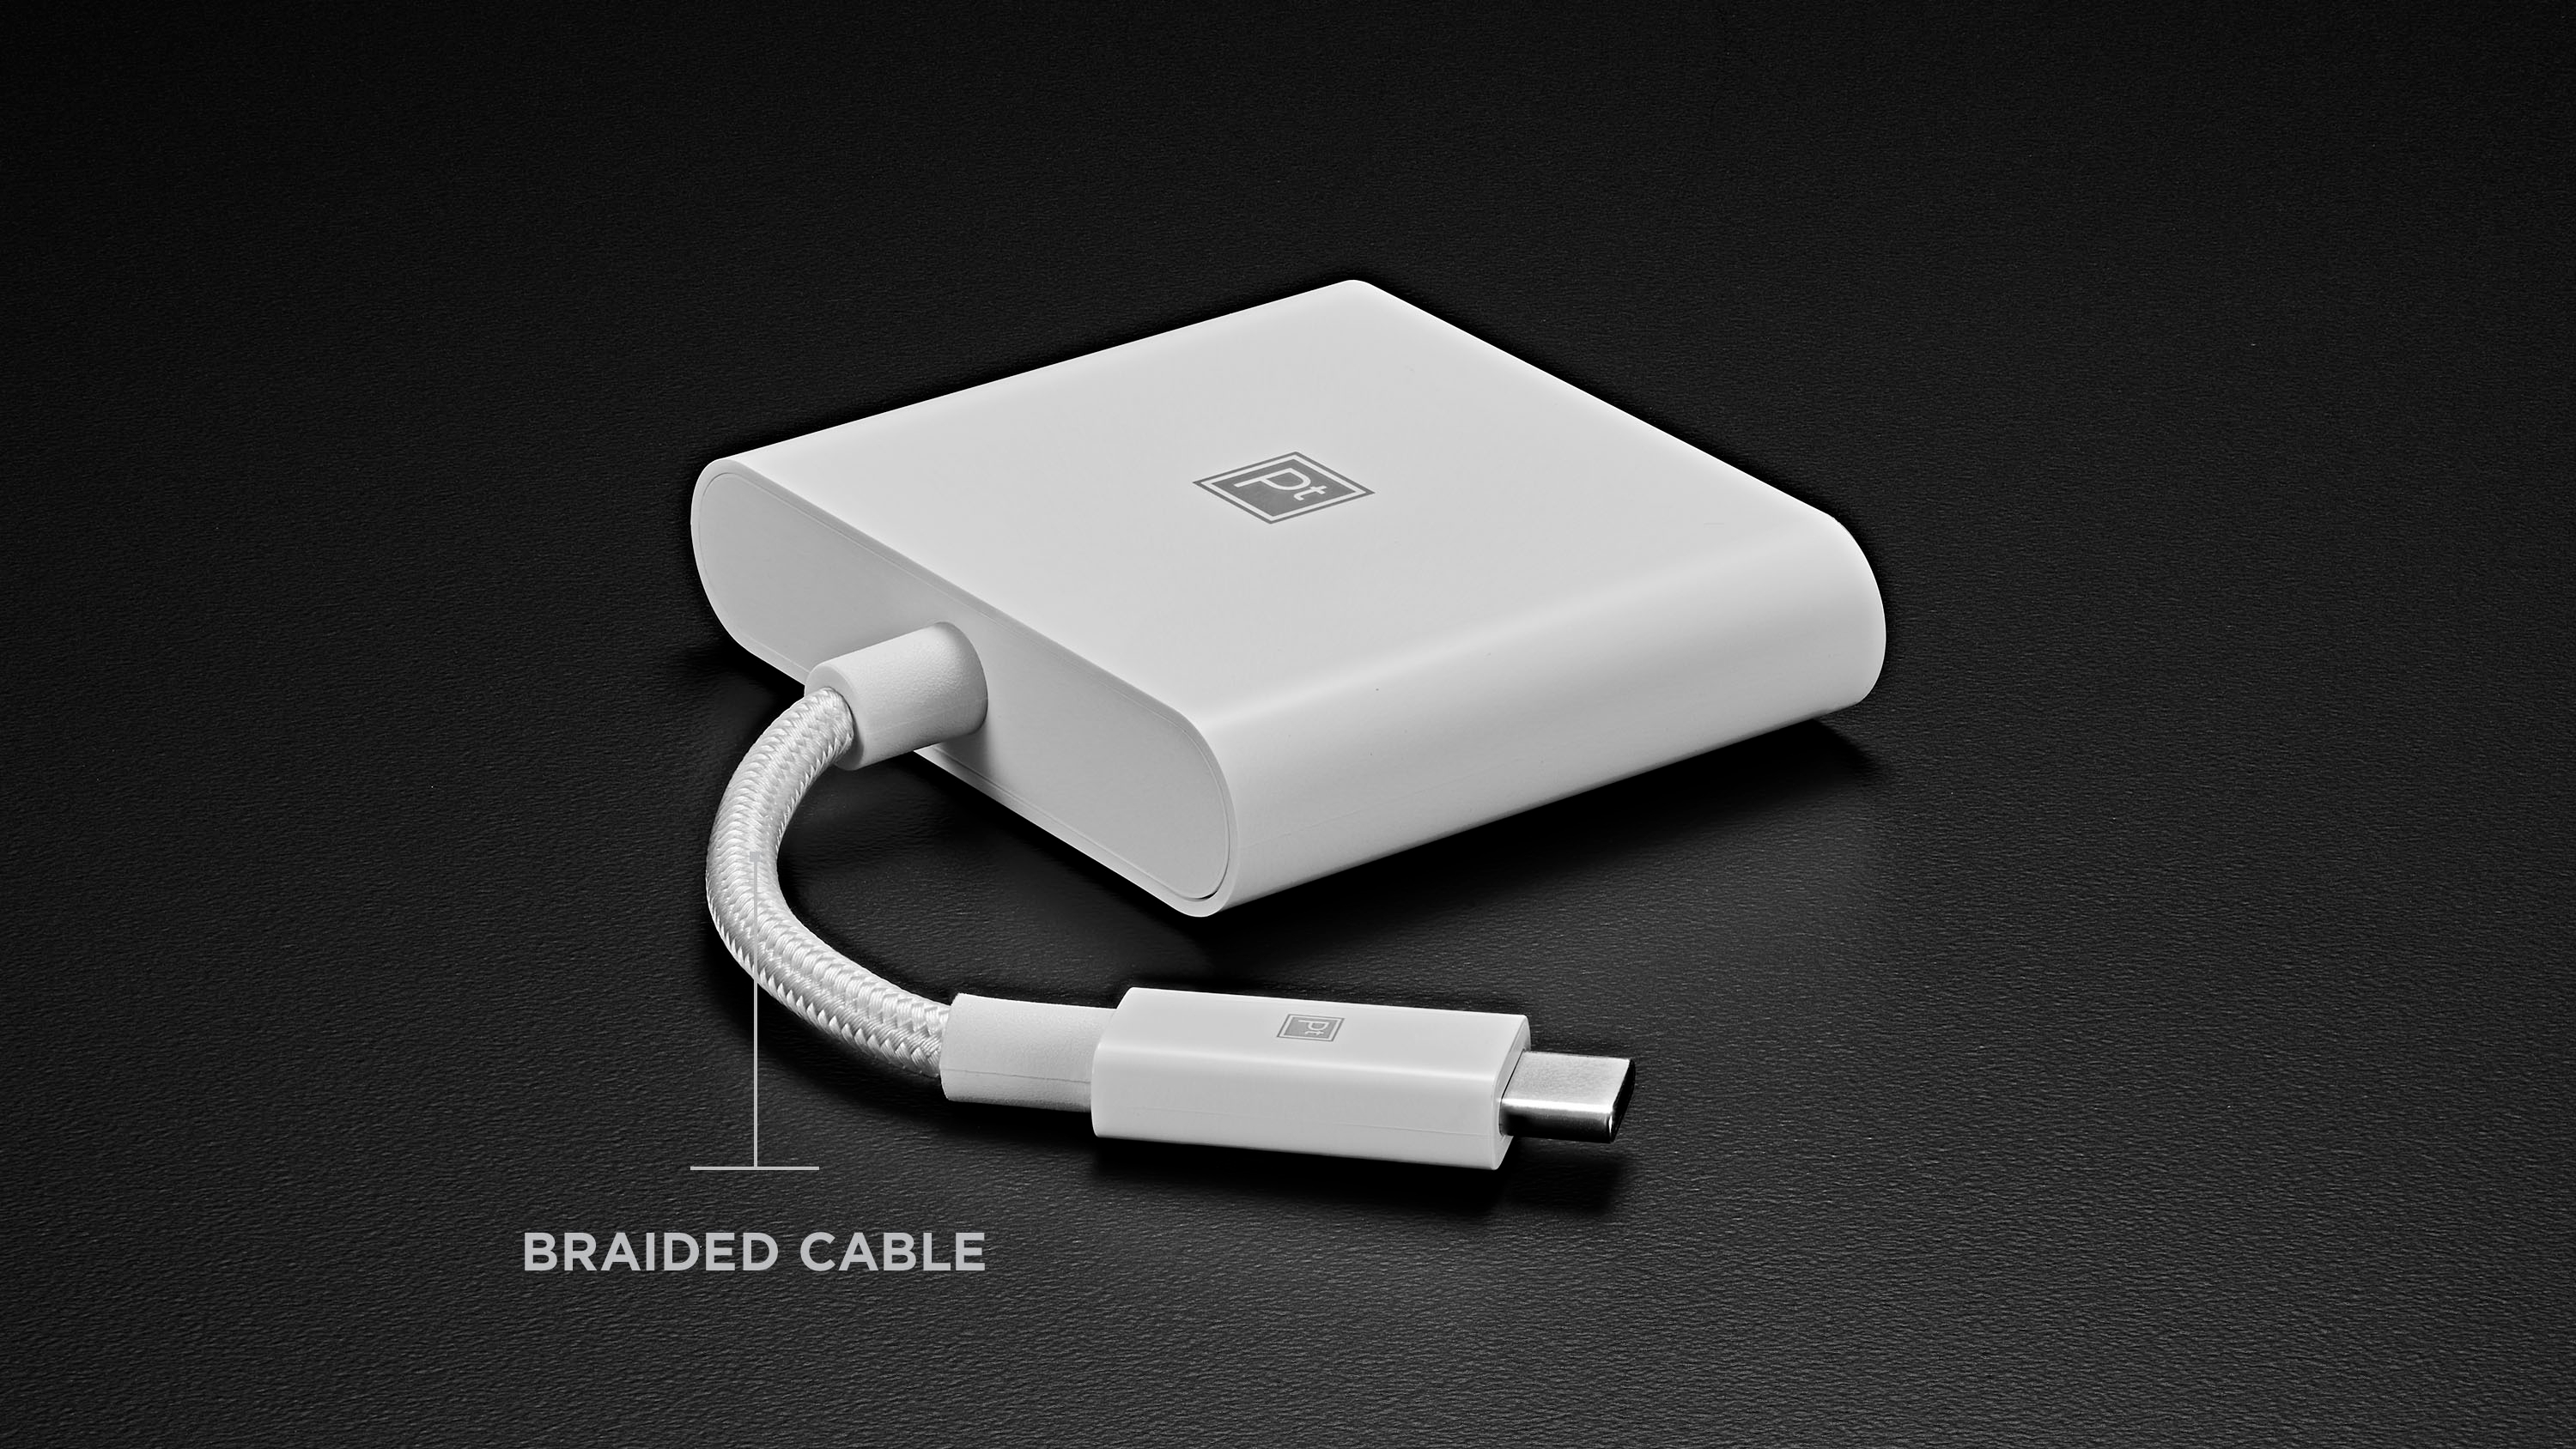  Apple USB-C Digital AV Multiport Adapter : Electronics